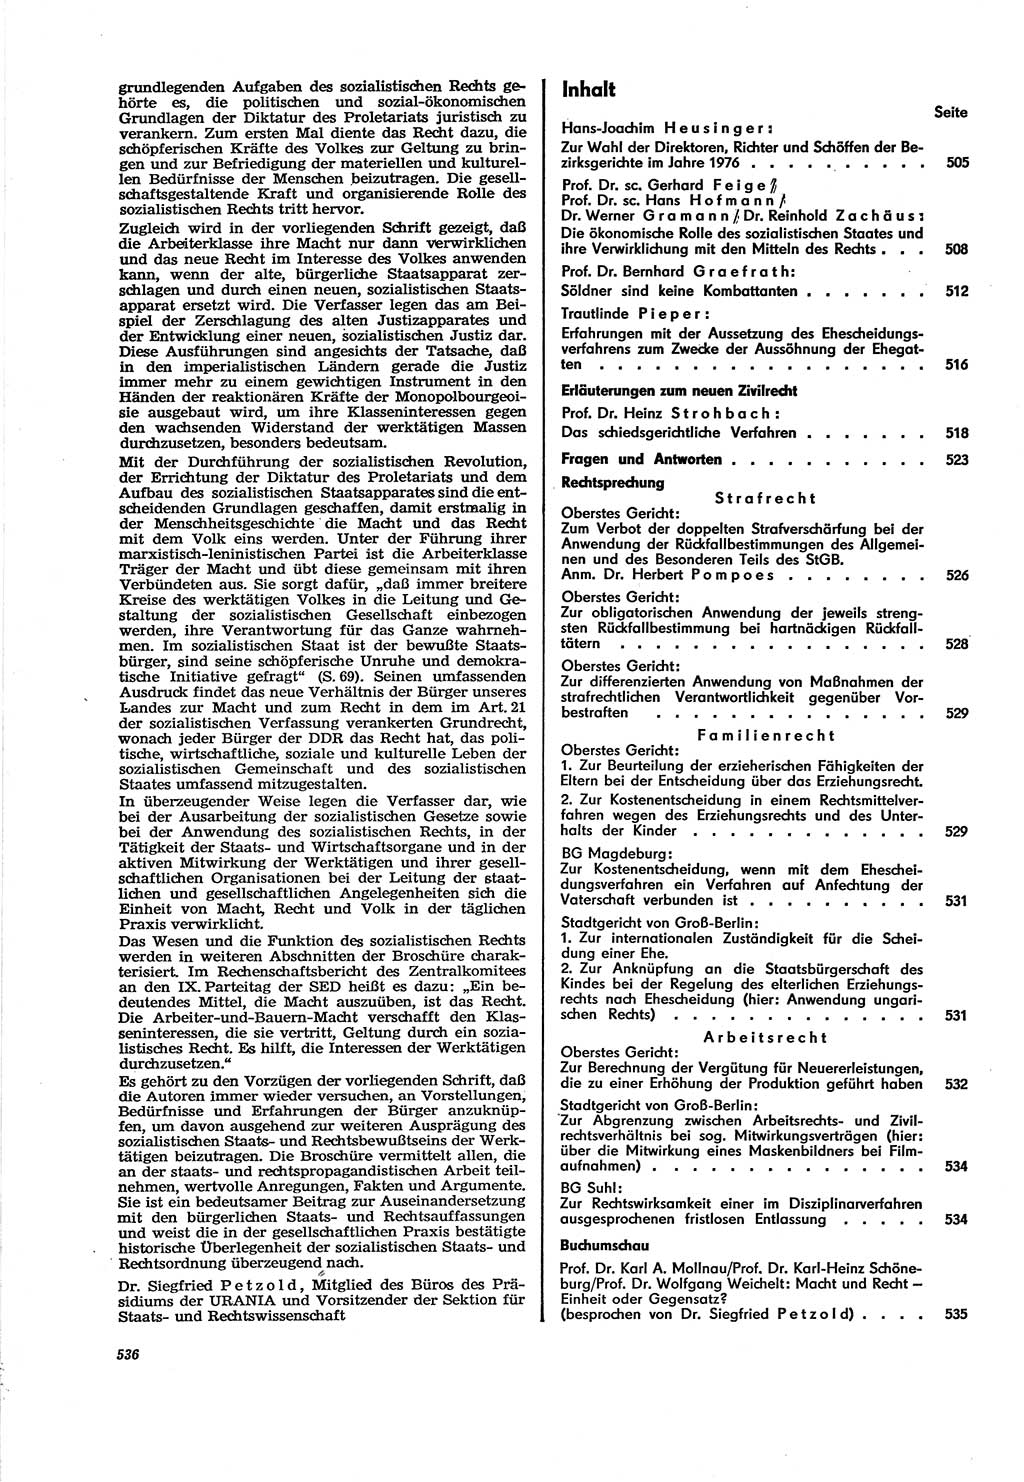 Neue Justiz (NJ), Zeitschrift für Recht und Rechtswissenschaft [Deutsche Demokratische Republik (DDR)], 30. Jahrgang 1976, Seite 536 (NJ DDR 1976, S. 536)